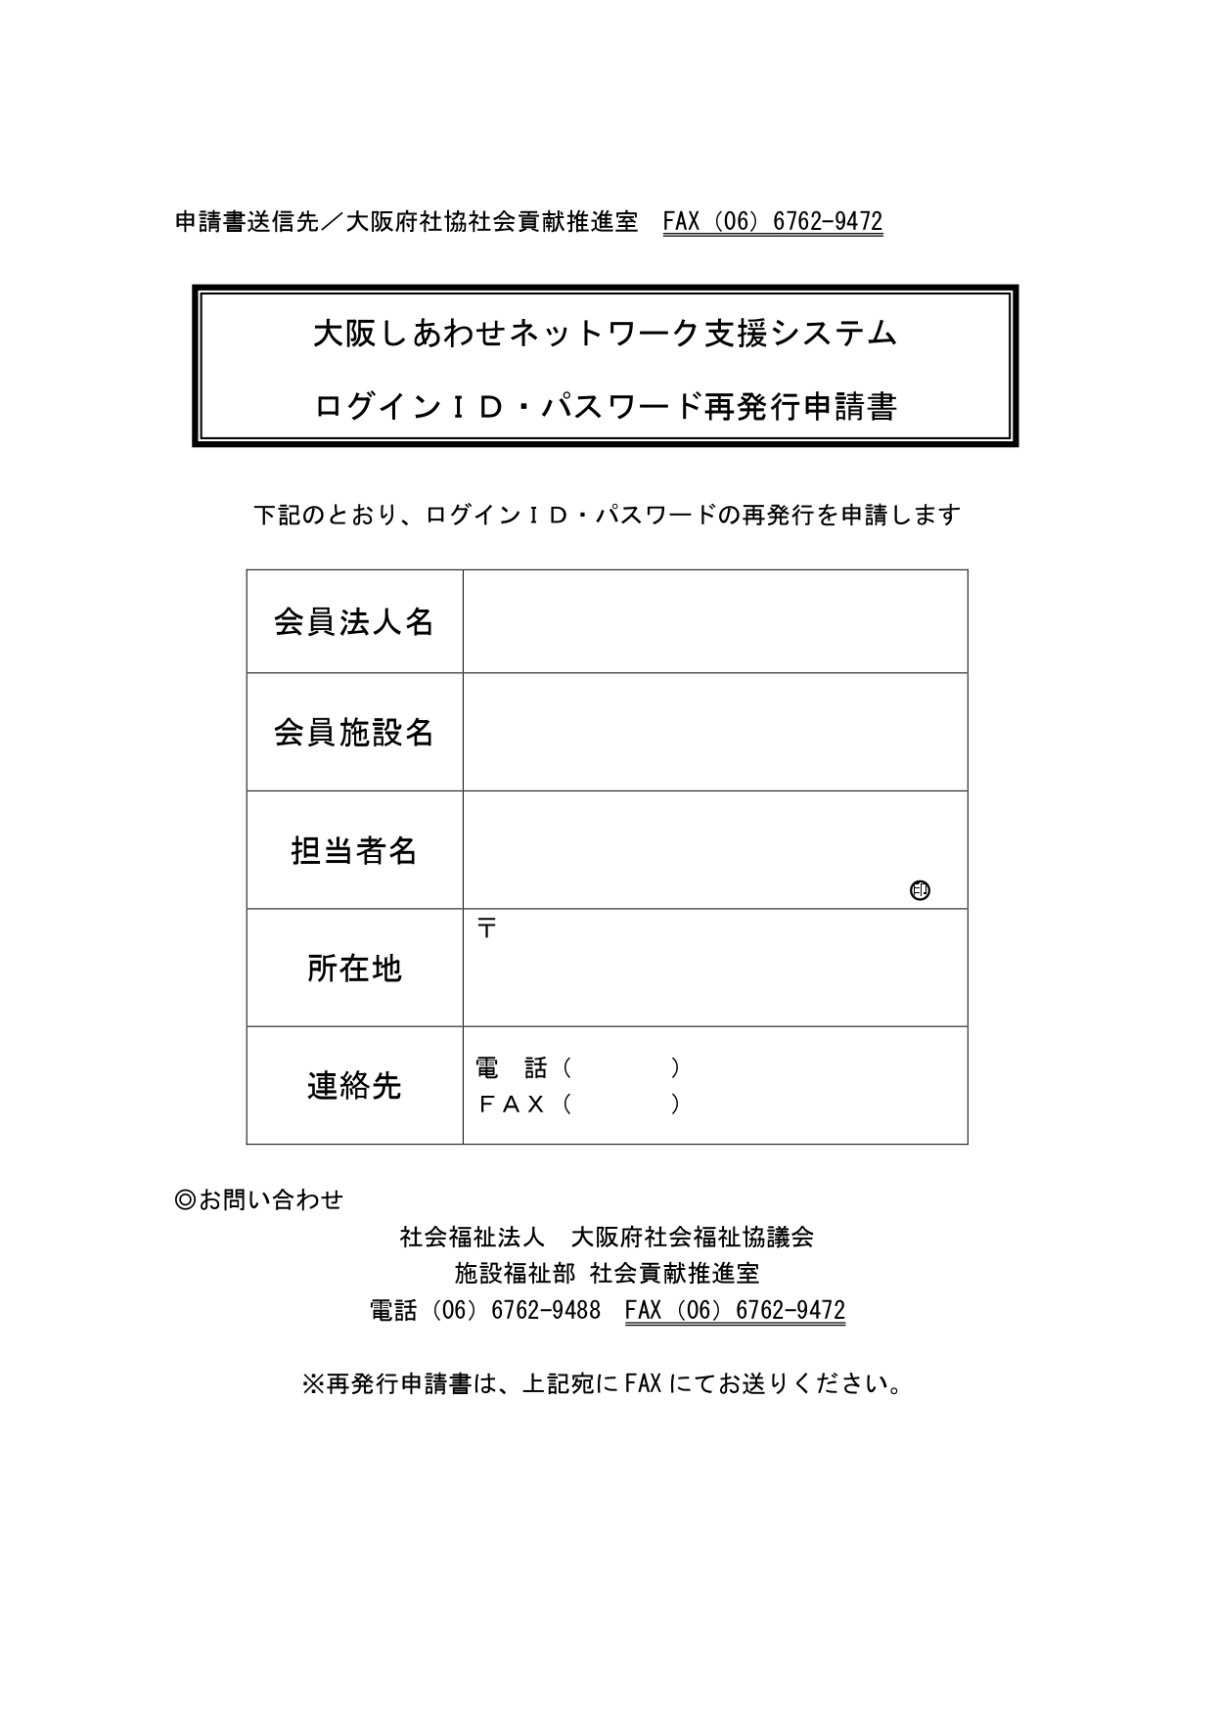 「大阪しあわせネットワーク支援システム」ログインID・パスワード　再発行申請書